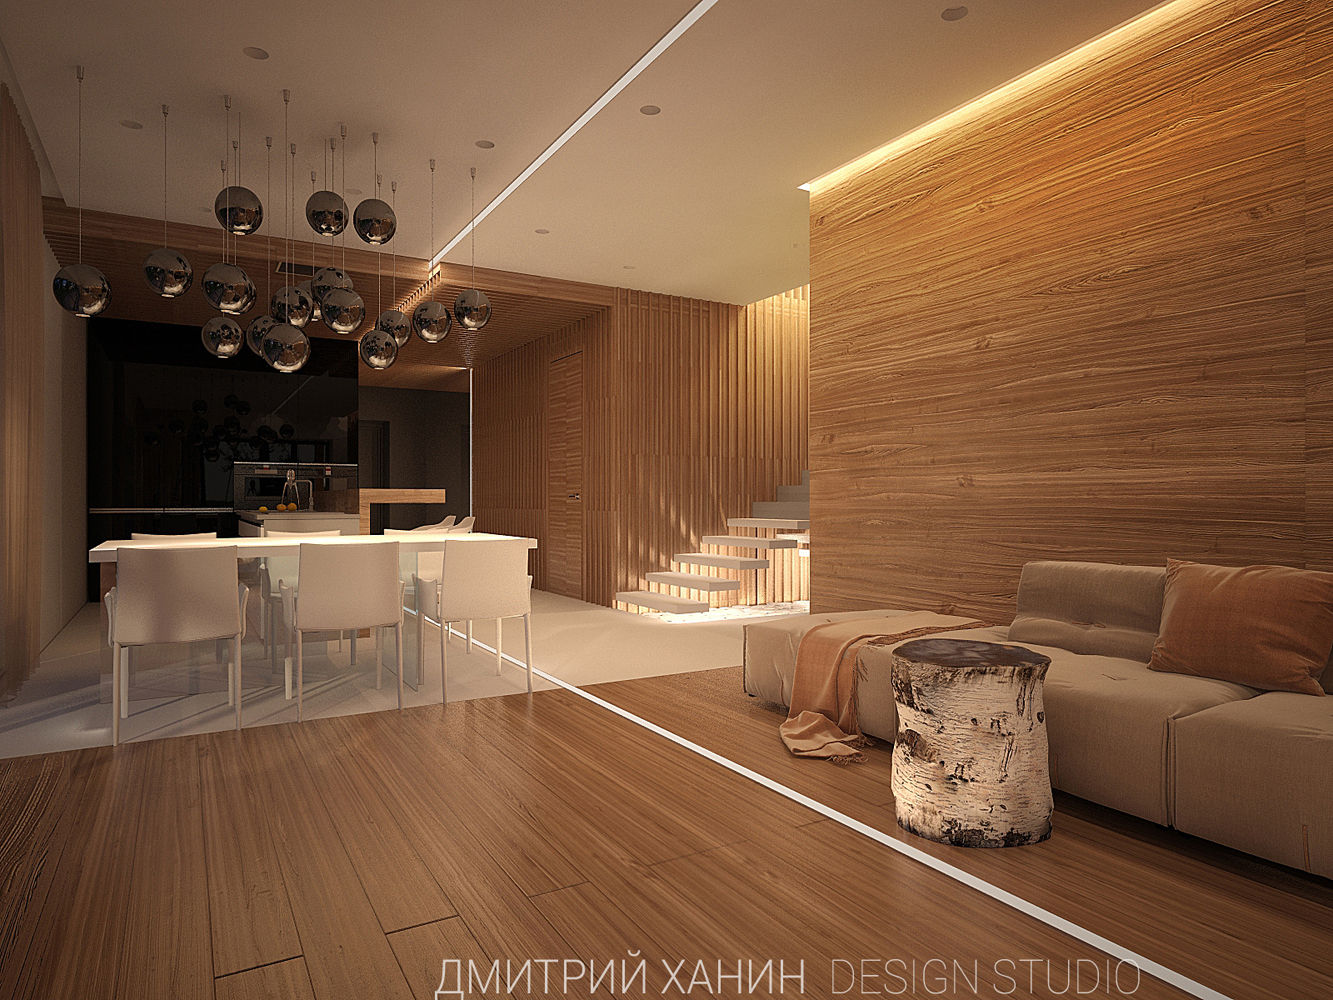 WoodHouse, Dmitriy Khanin Dmitriy Khanin 房子 木頭 Wood effect